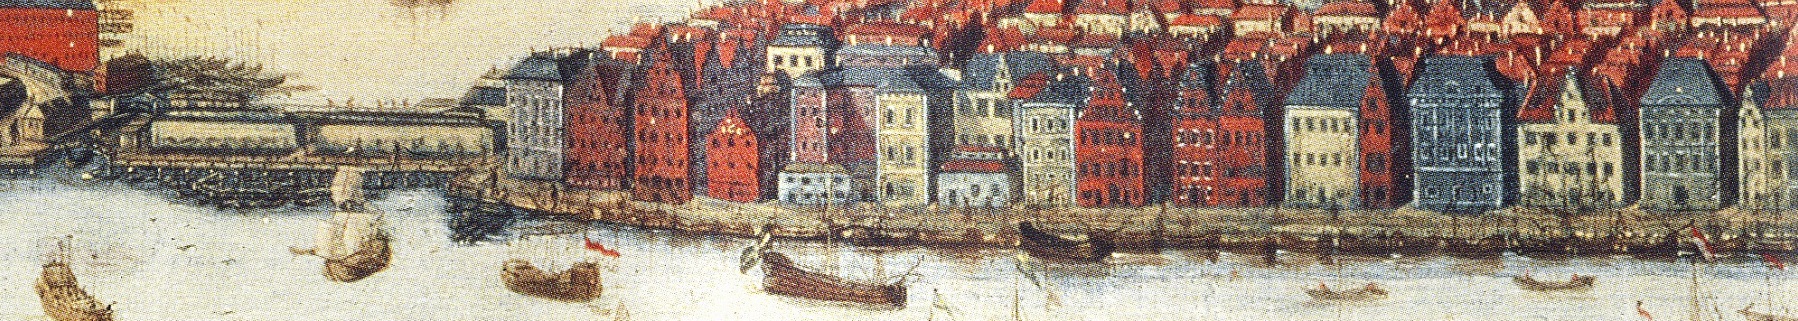 En mycket gammal illustration av Skeppsbron och vattnet utanför. Segelbåtar av olika storlekar.